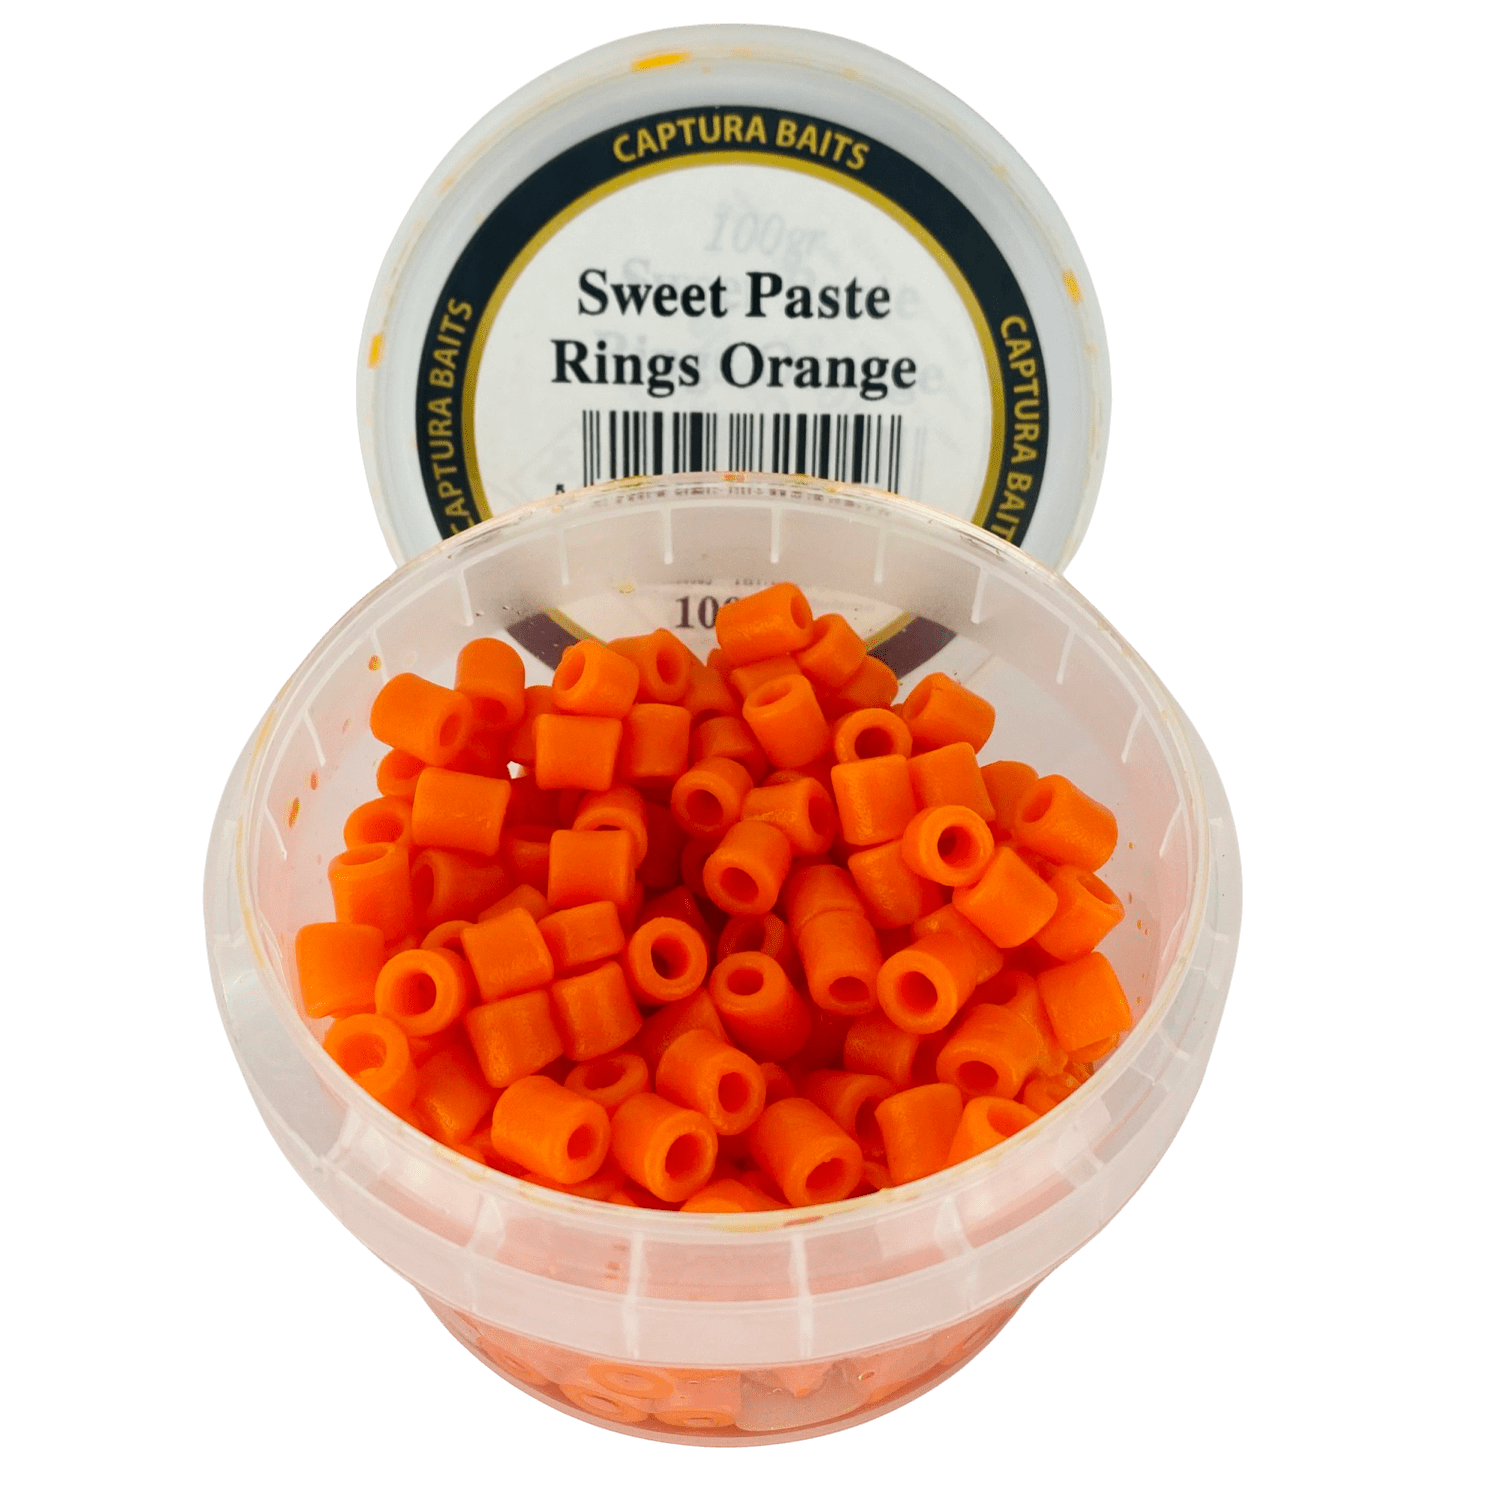 captura baits sweet paste rings pasta macaroni